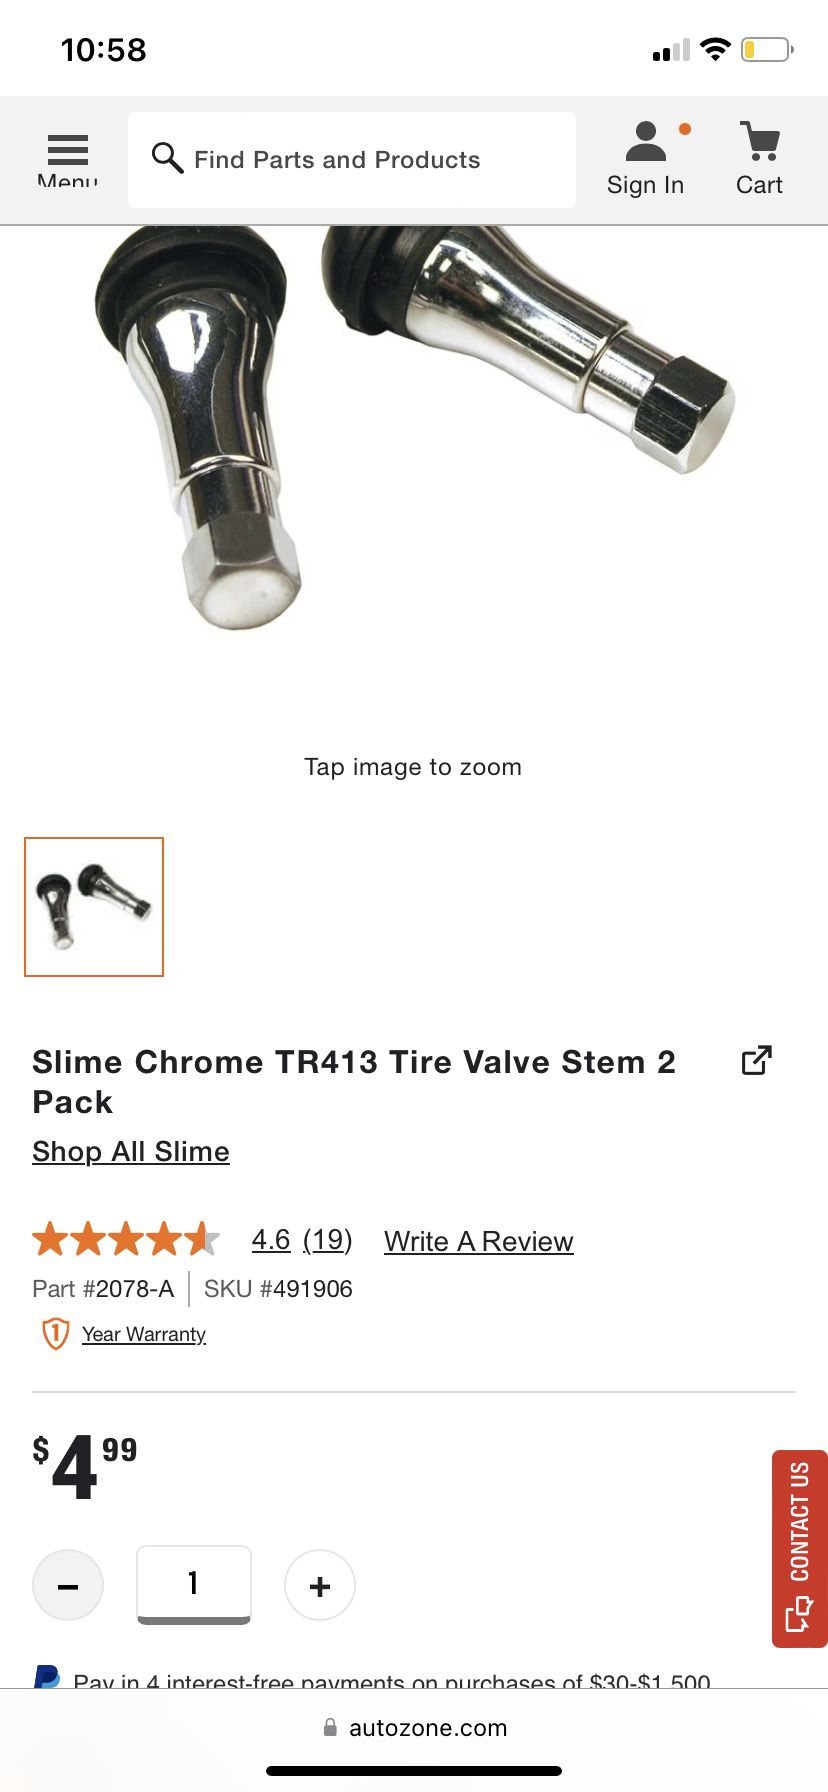 Slime Chrome TR413 Tire Valve Stem 4 Pack